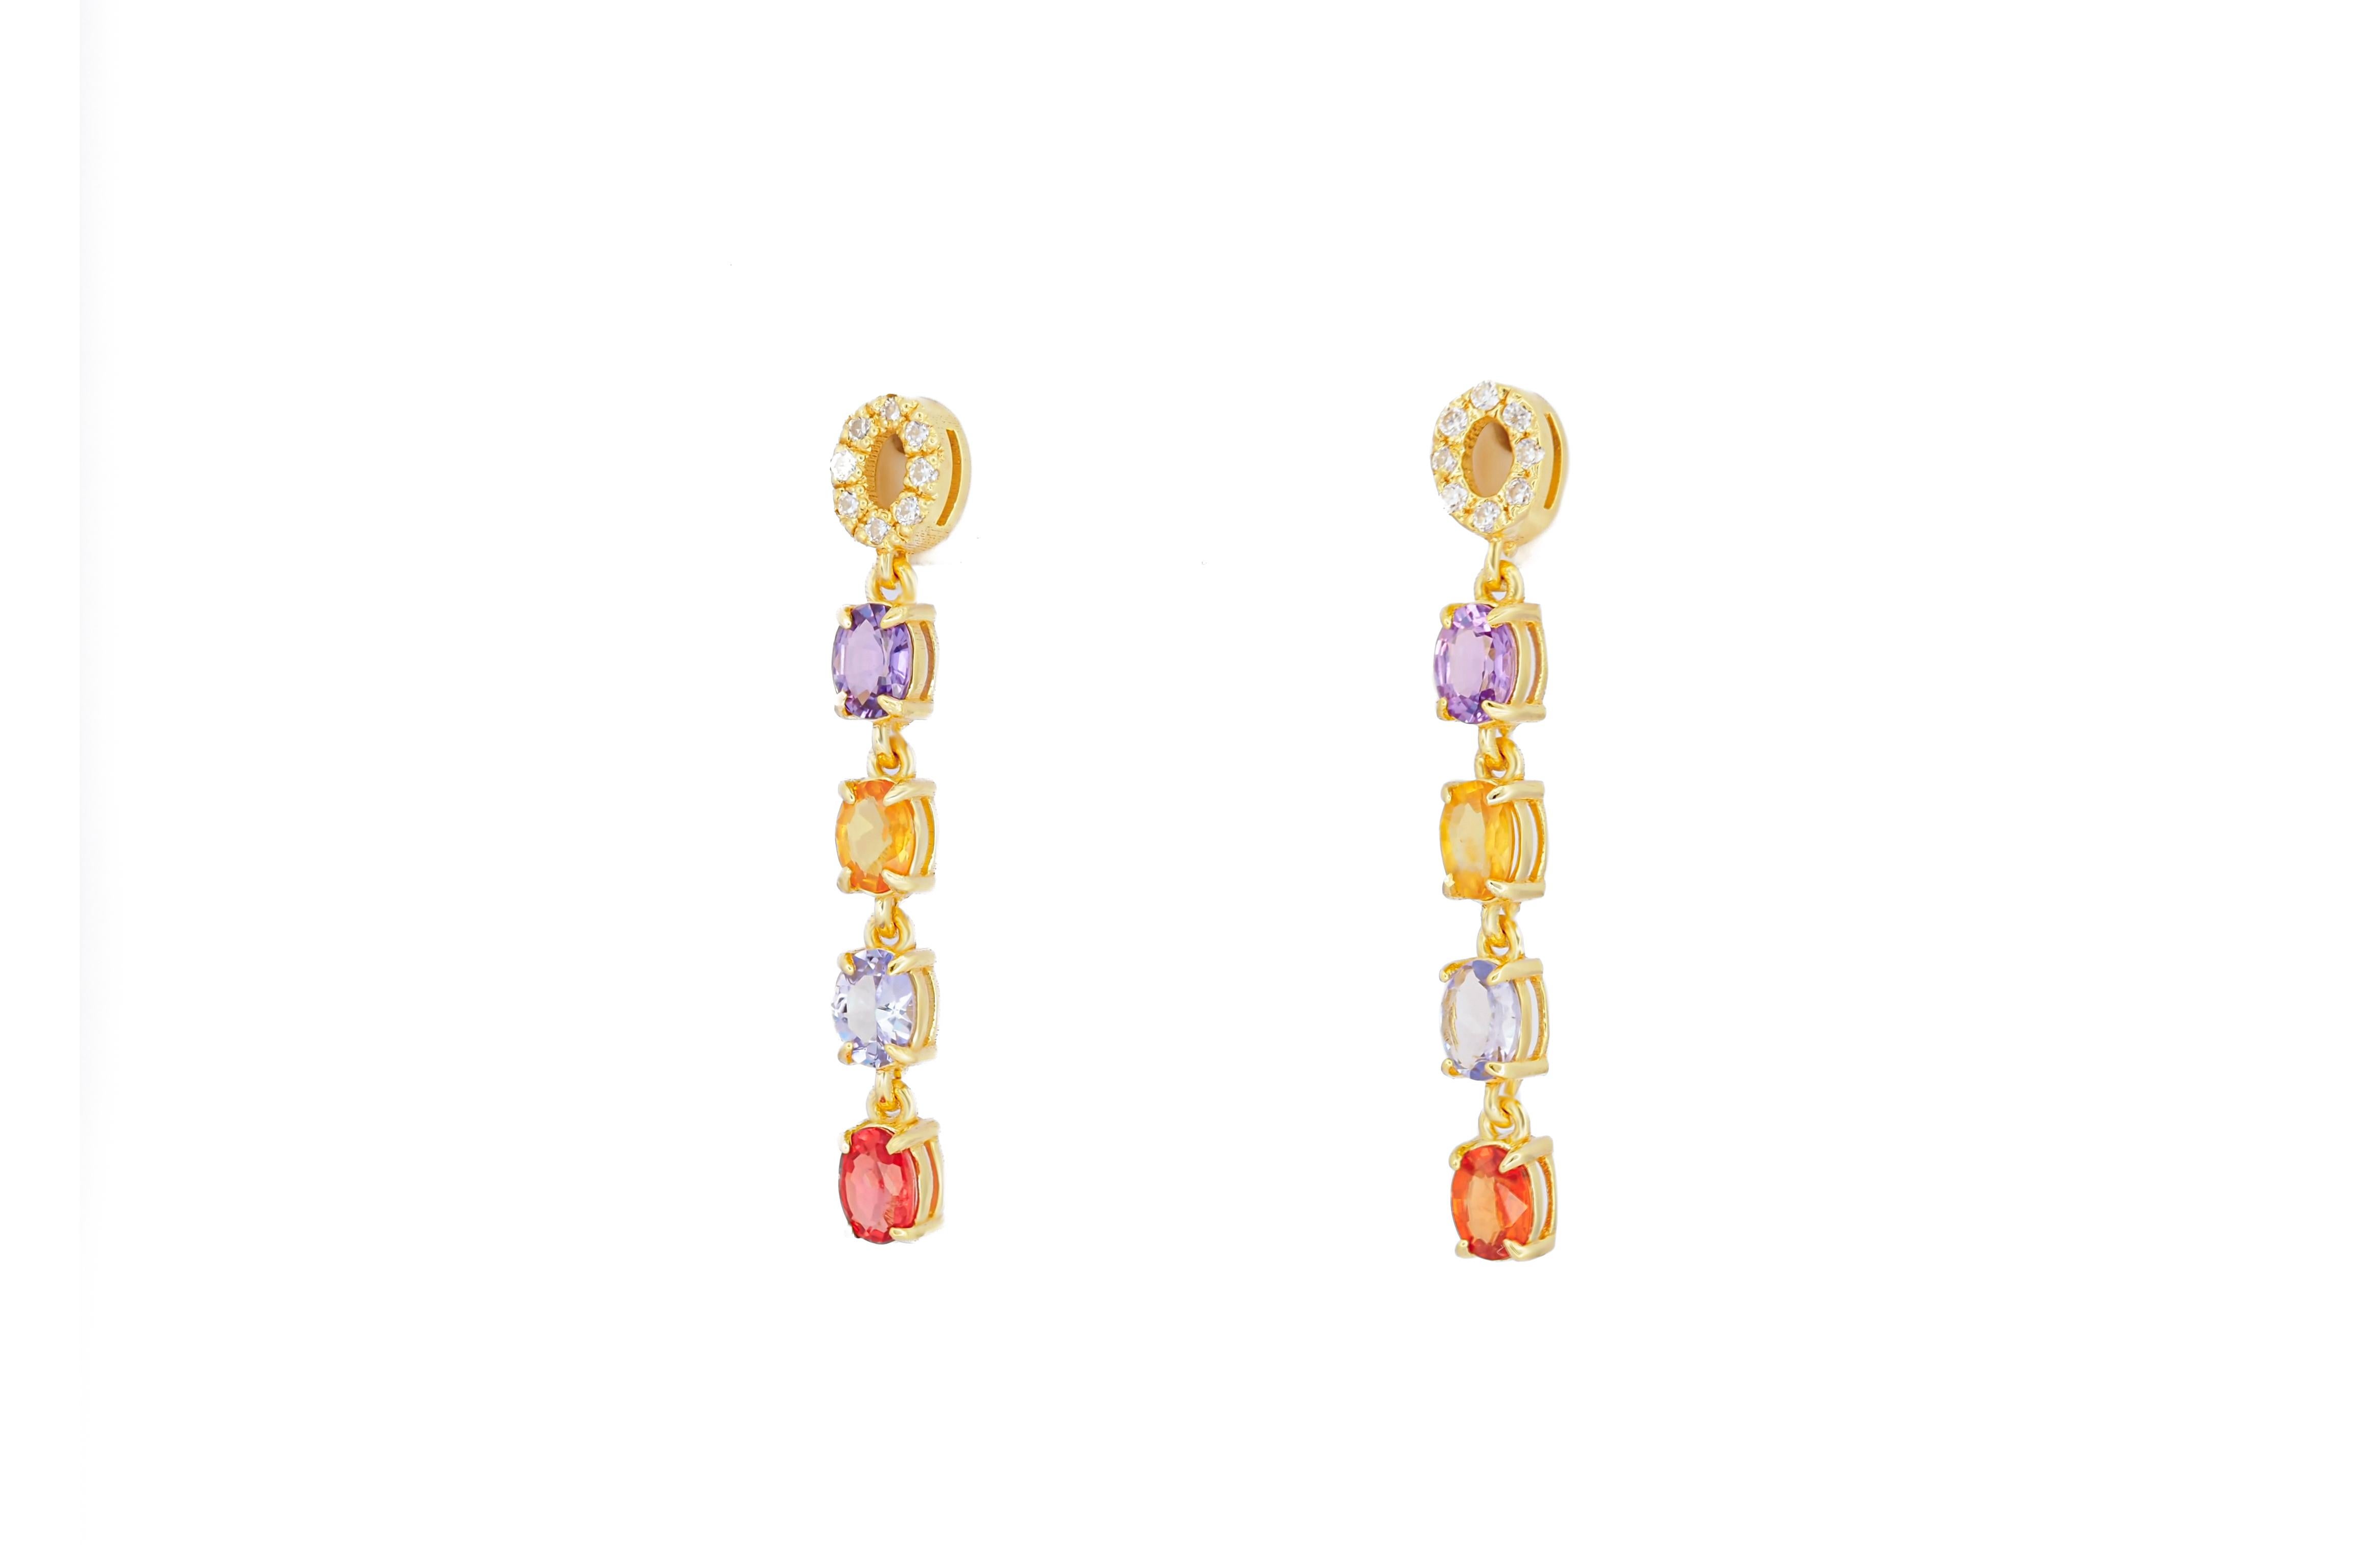 Oval Cut Amethyst, sapphire, tanzanite, diamonds earrings studs in 14k gold For Sale